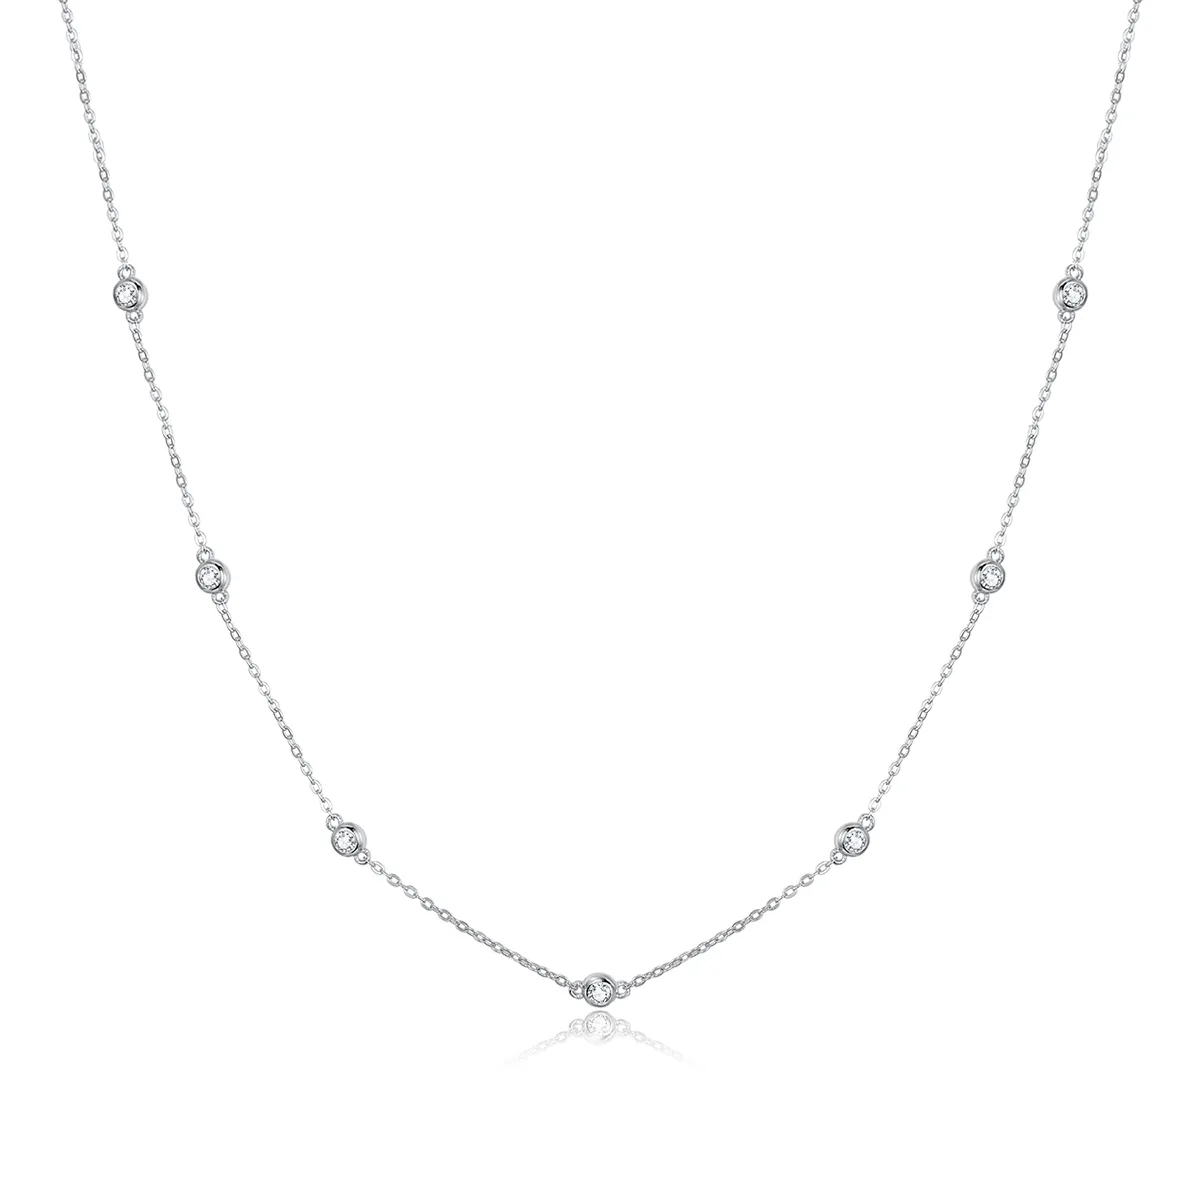 pandora style silver romantic shine chain necklace scn393